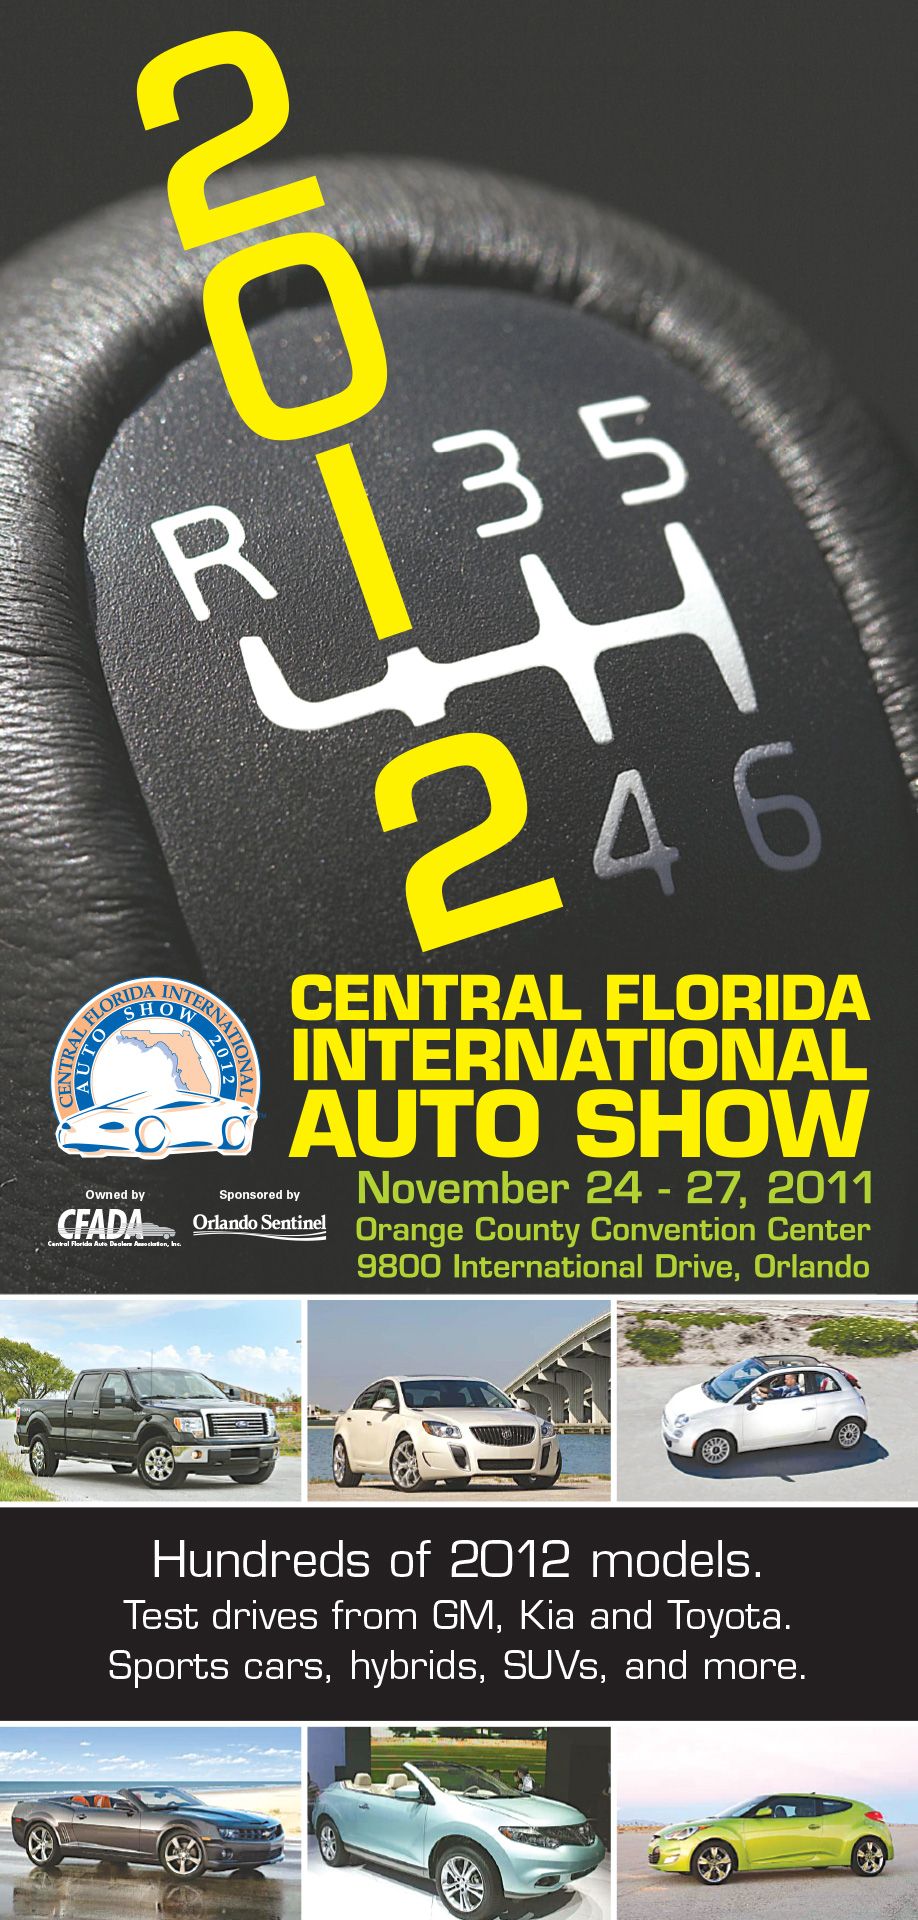 Central Florida International Auto Show cover